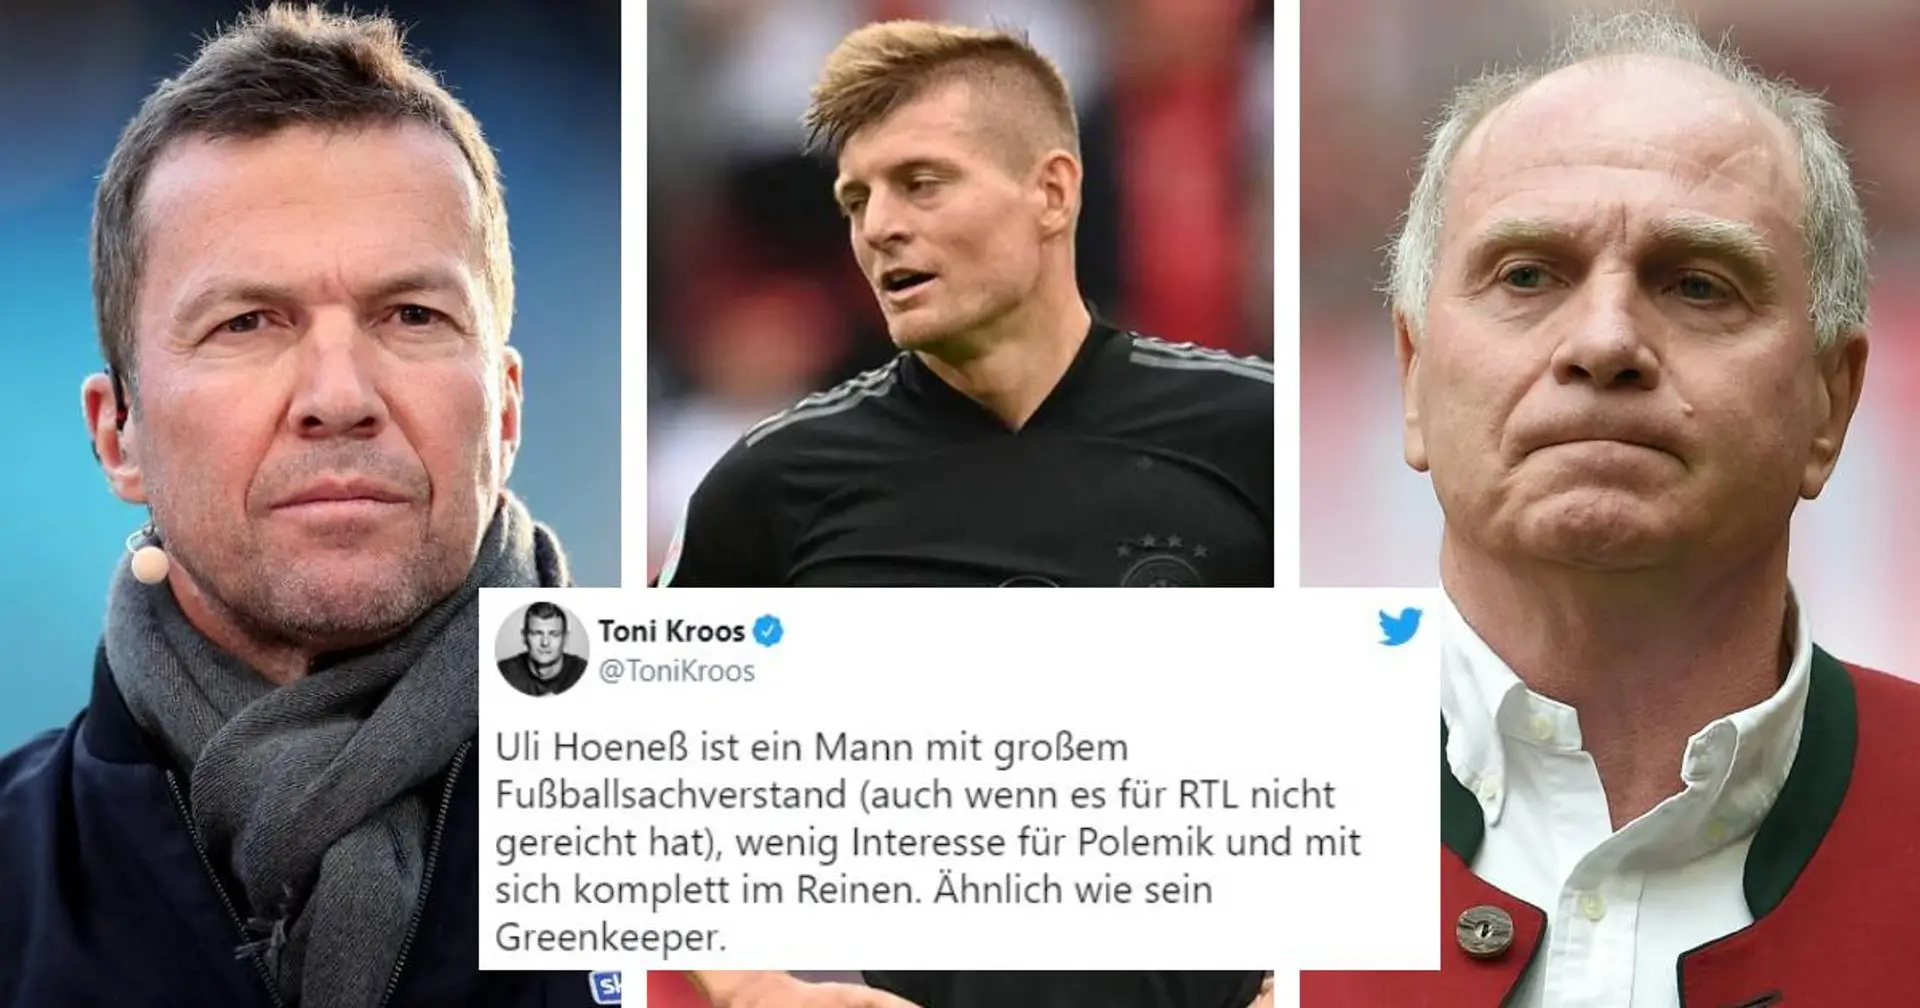 "Ähnlich wie sein Greenkeeper": Kroos kontert Hoeneß und stichelt auch gegen Matthäus